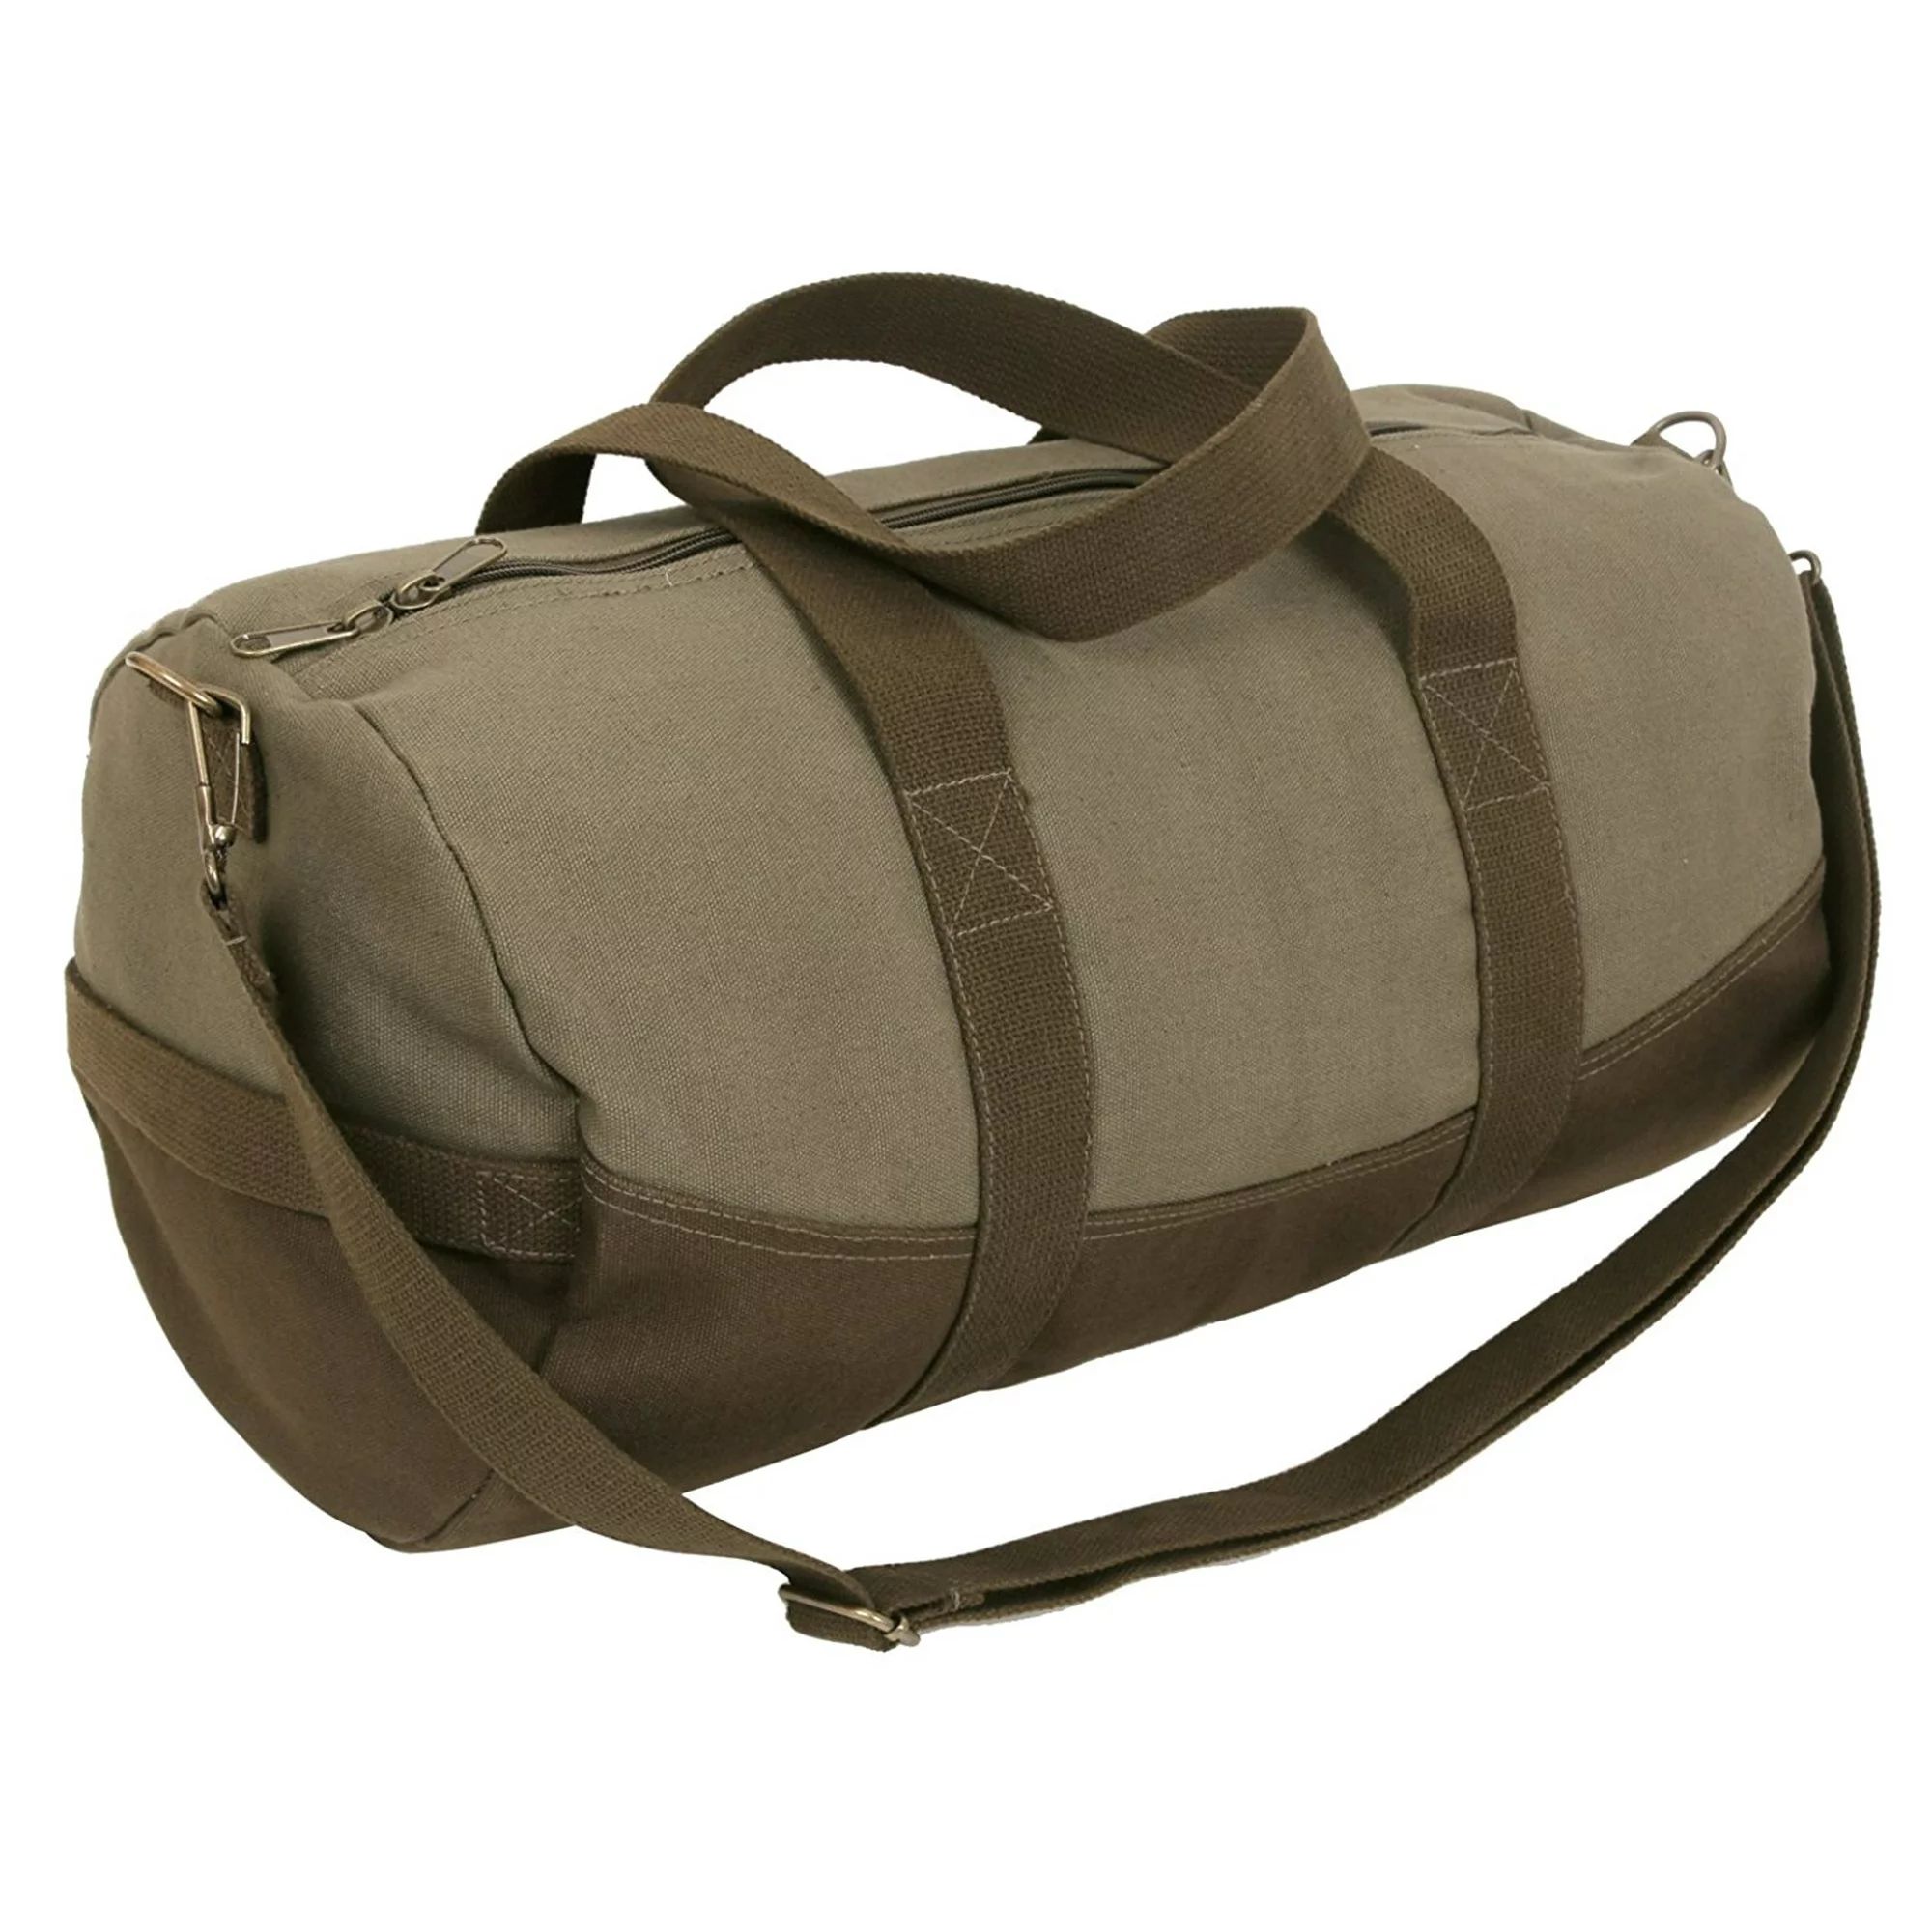 Rothco Two-Tone Canvas Duffle Bag With Brown Bottom | Walmart (US)